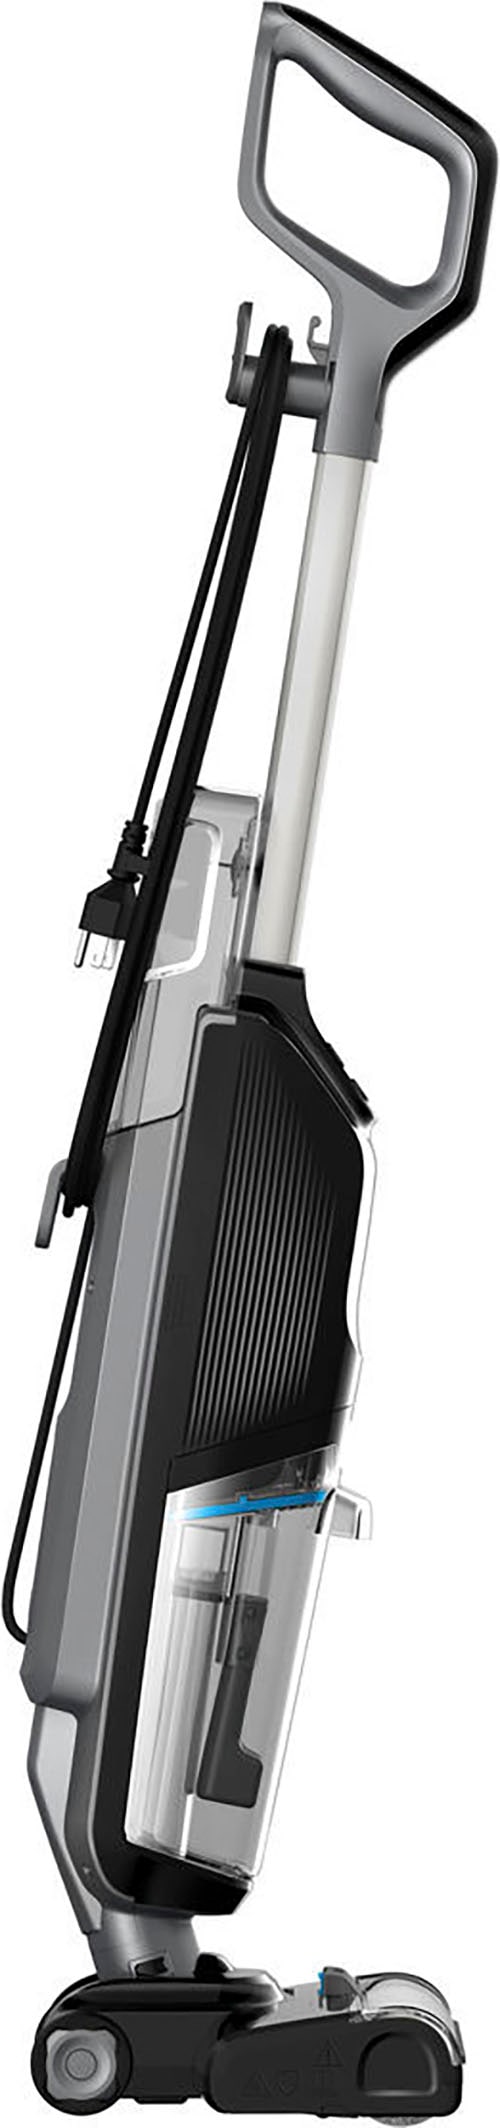 Bissell Nass-Trocken-Sauger »CrossWave® HF2 Select Nass-Trocken-Sauger, leicht, einfach steuerbar«, für Hartböden, Dual-Tank, saugt & wischt gleichzeitig, Selbstreinigung